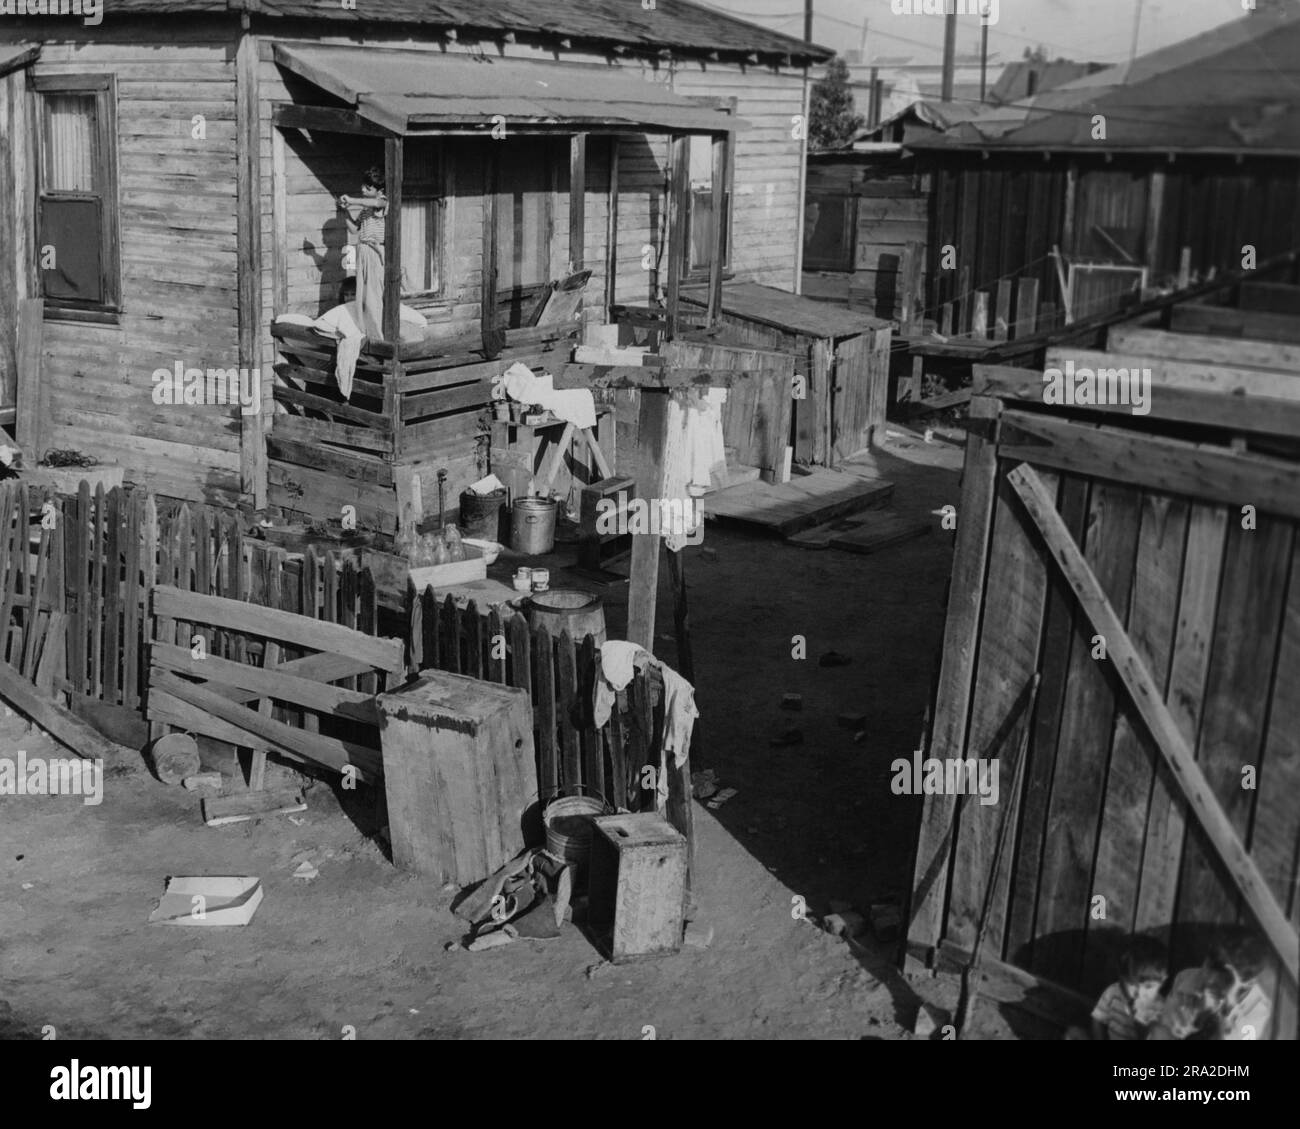 La scena di una casa in un quartiere povero. Ragazza con un vestito in piedi sul portico posteriore Foto Stock